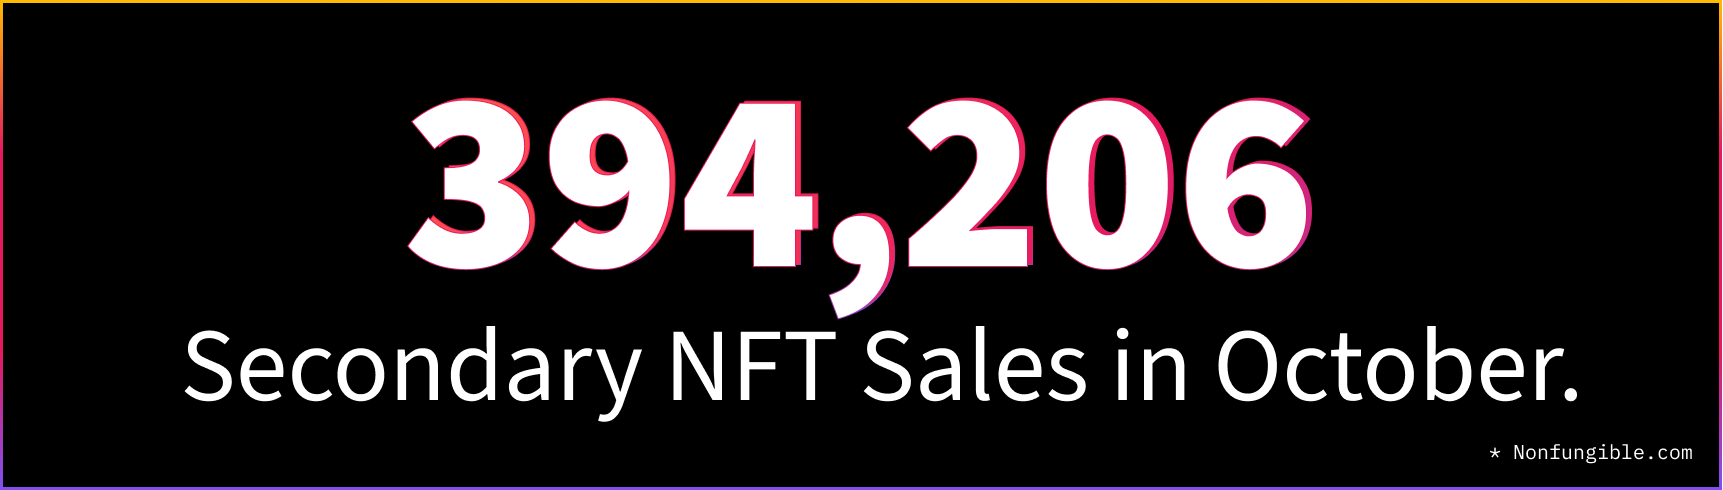 October NFT Stats & News